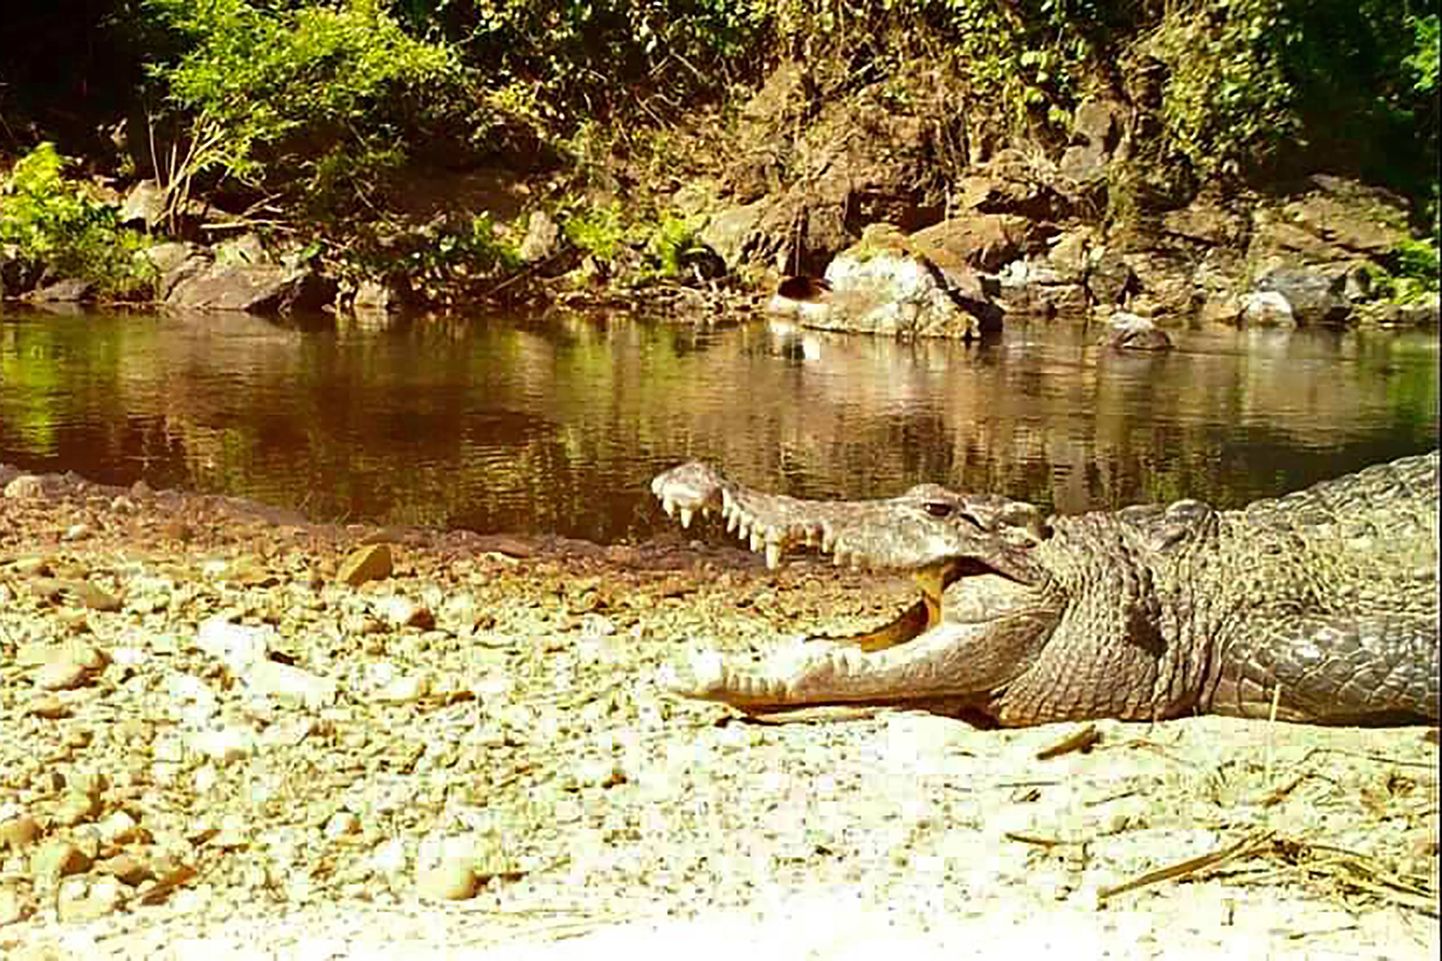 Tai Kaeng Krachan rahvuspark avaldas 23. jaanuaril foto väljasuremisohus olevast Siiami krokodillist, keda on nähtud viimase kümne aasta jooksul vaid paar korda.